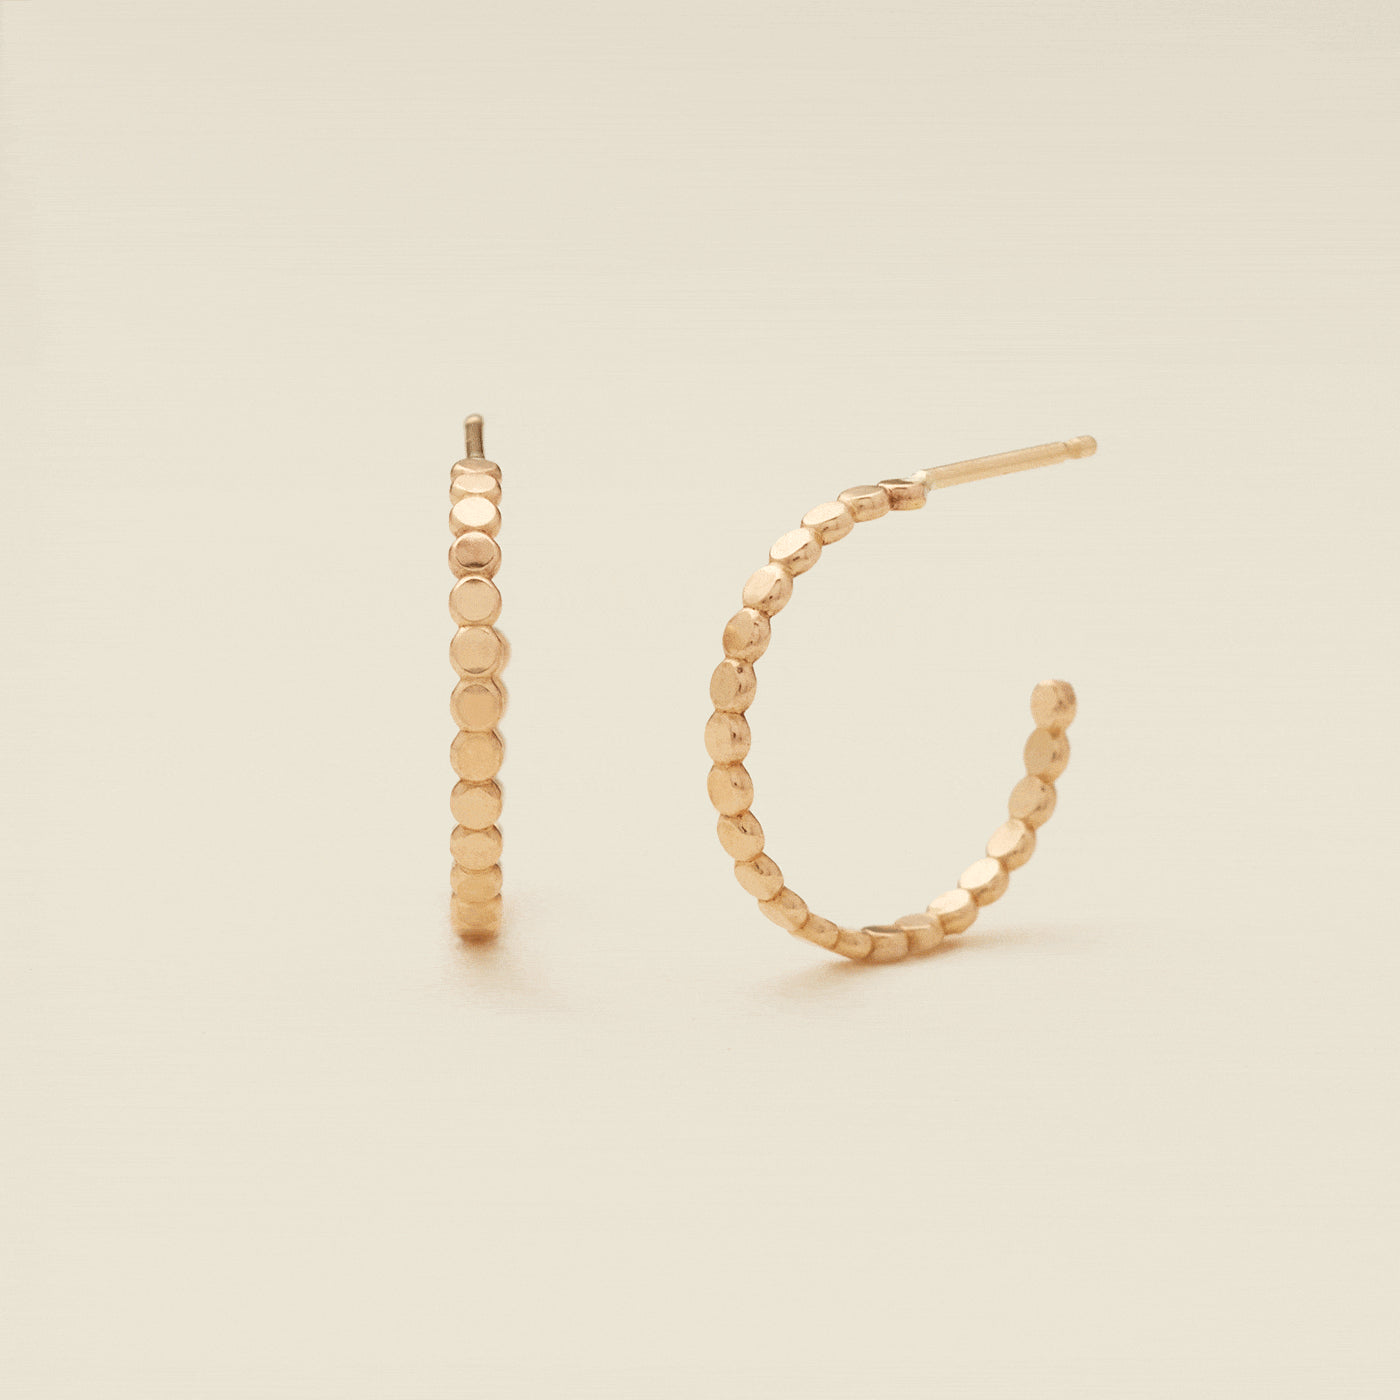 Poppy Hoop Earrings Gold Filled / 20mm Earring